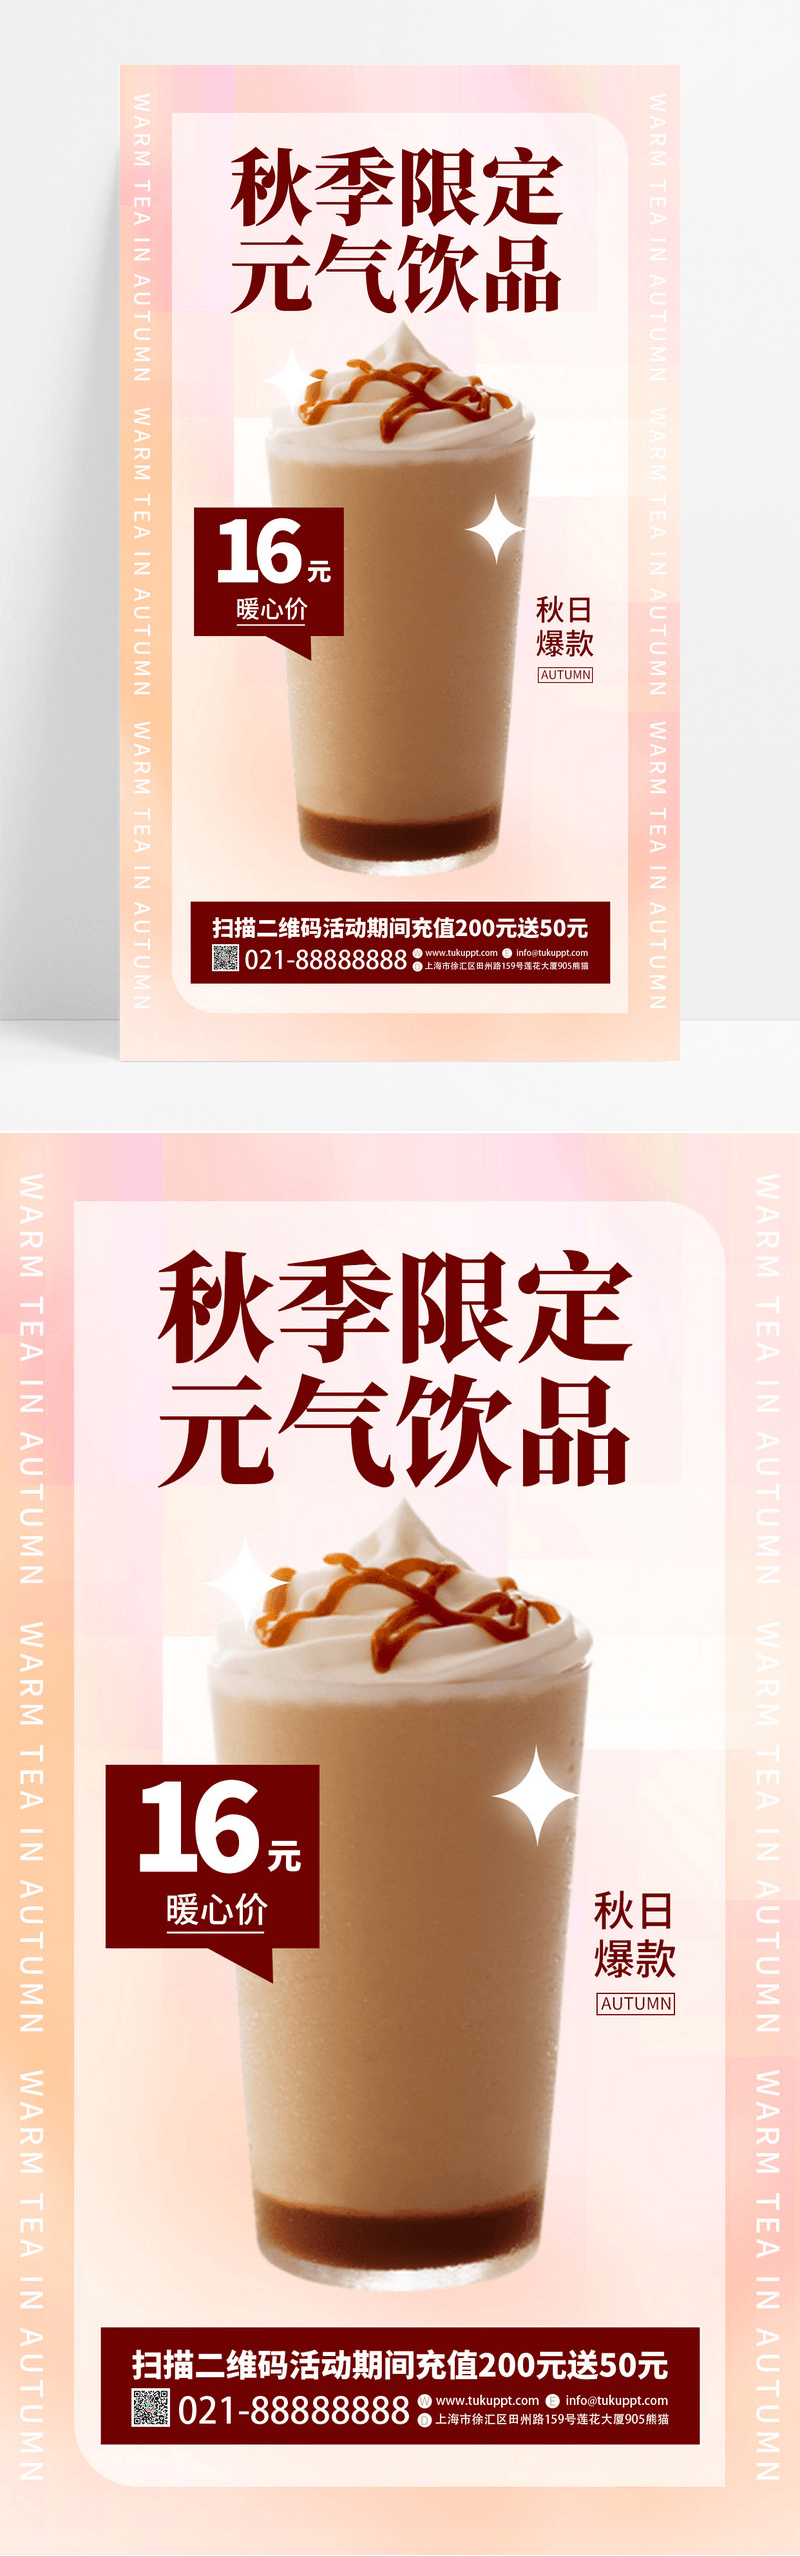 渐变色秋季限定奶茶饮品秋季新品上新餐饮美食手机宣传海报